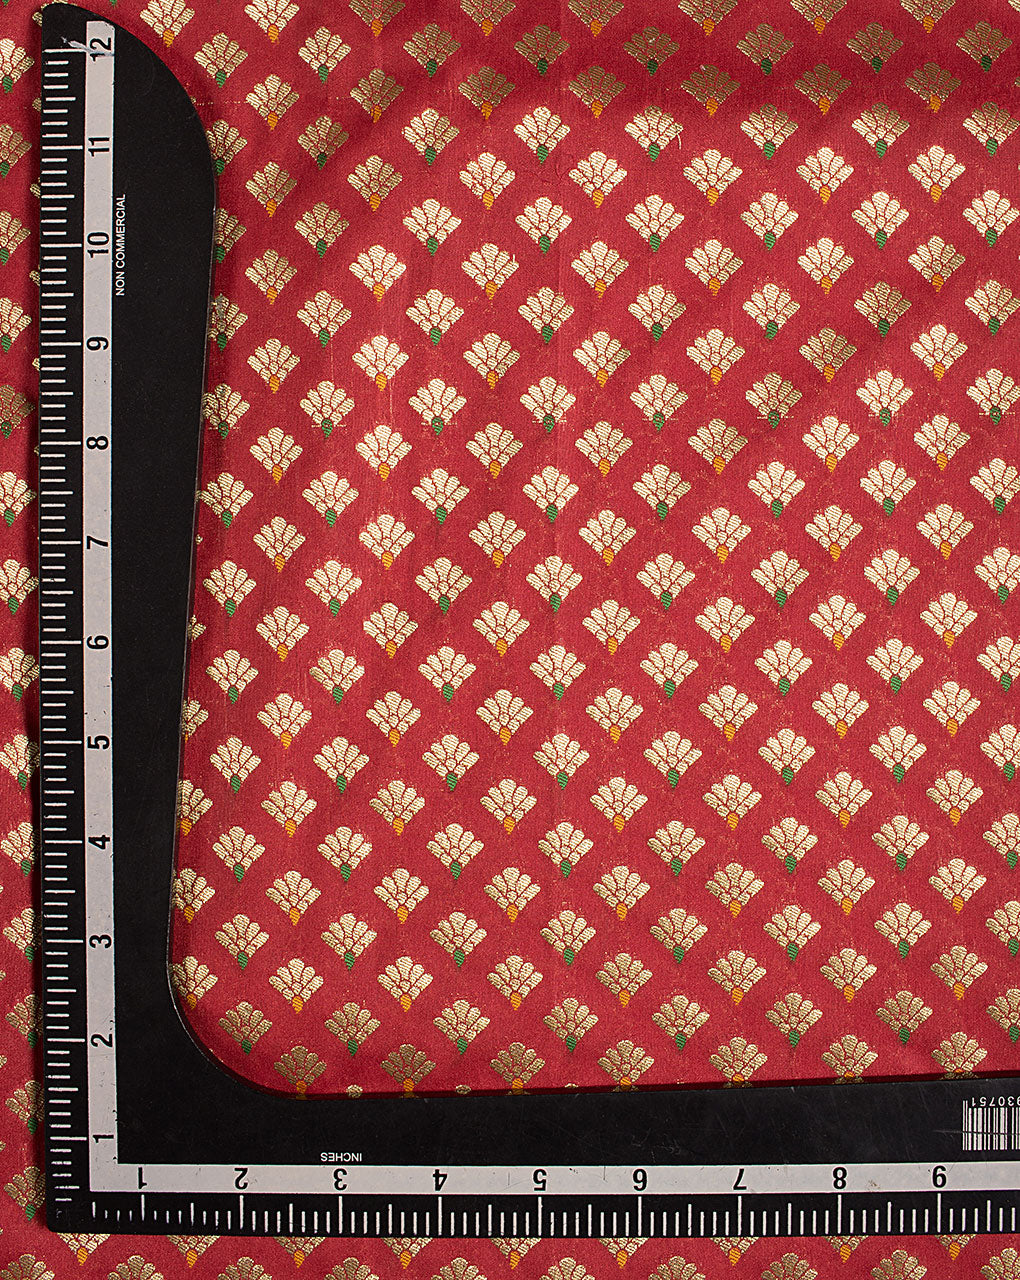 ( Pre Cut 1.75 MTR ) Zari Jacquard Banarasi Taffeta Silk Fabric